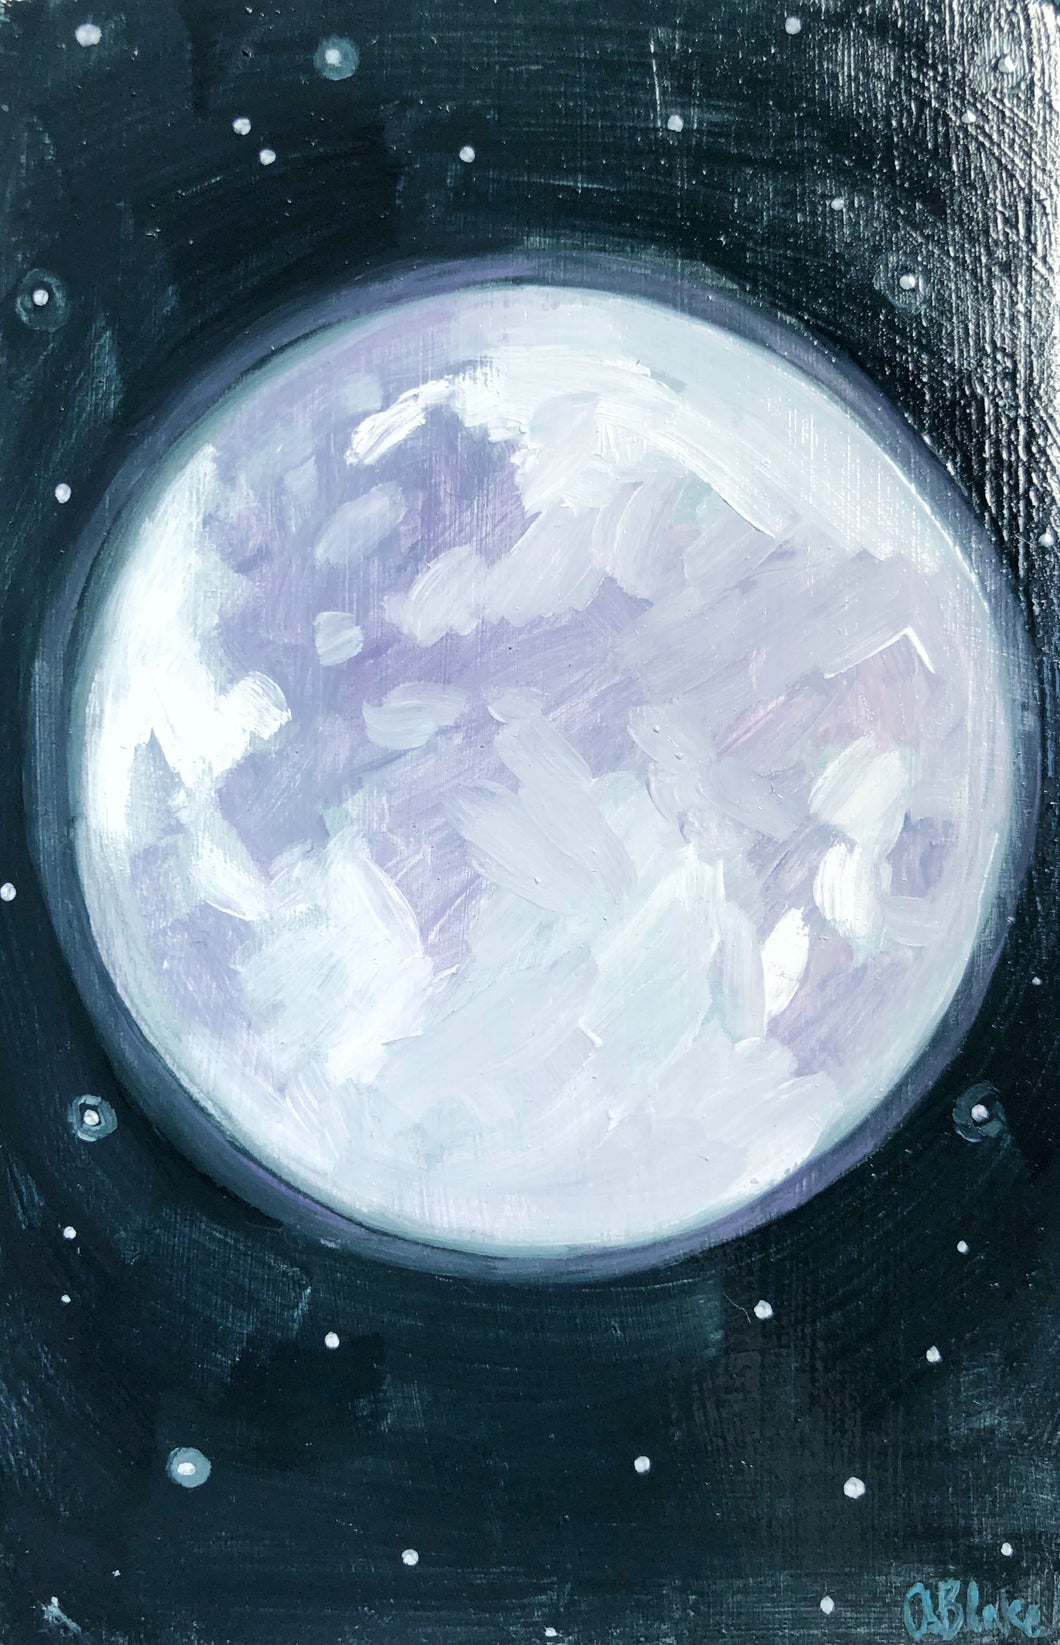 Moon 2